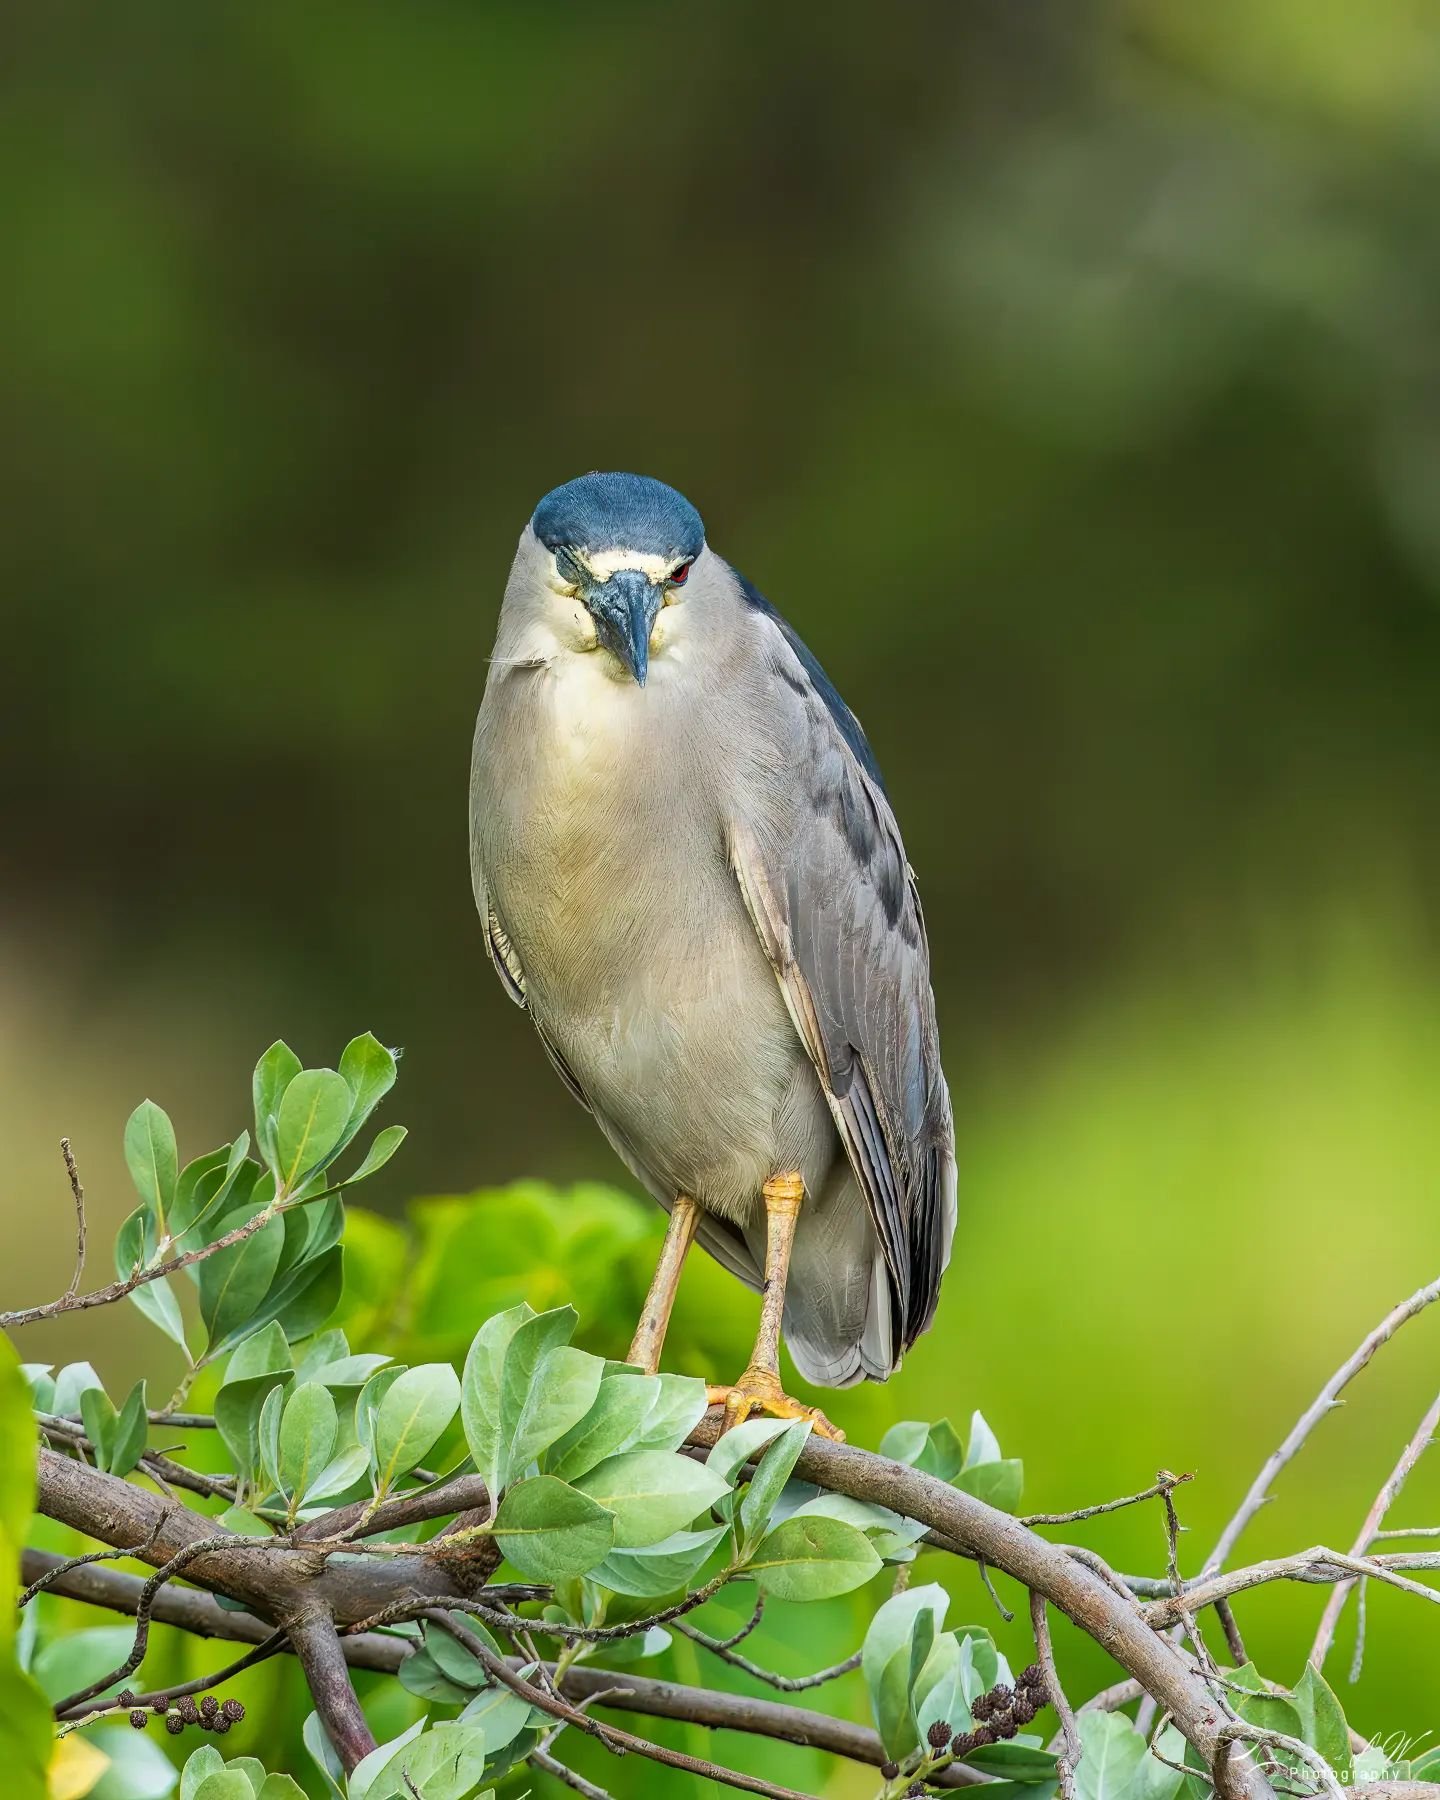 The Stare 😎

#birdphotography 
#heron #aukuu
#hawaiibirds 
#alohaoutdoors 
#hawaiilife 
#ighawaii 
#ig_naturelovers 
#ig_birdwatchers 
#ig_wildlife